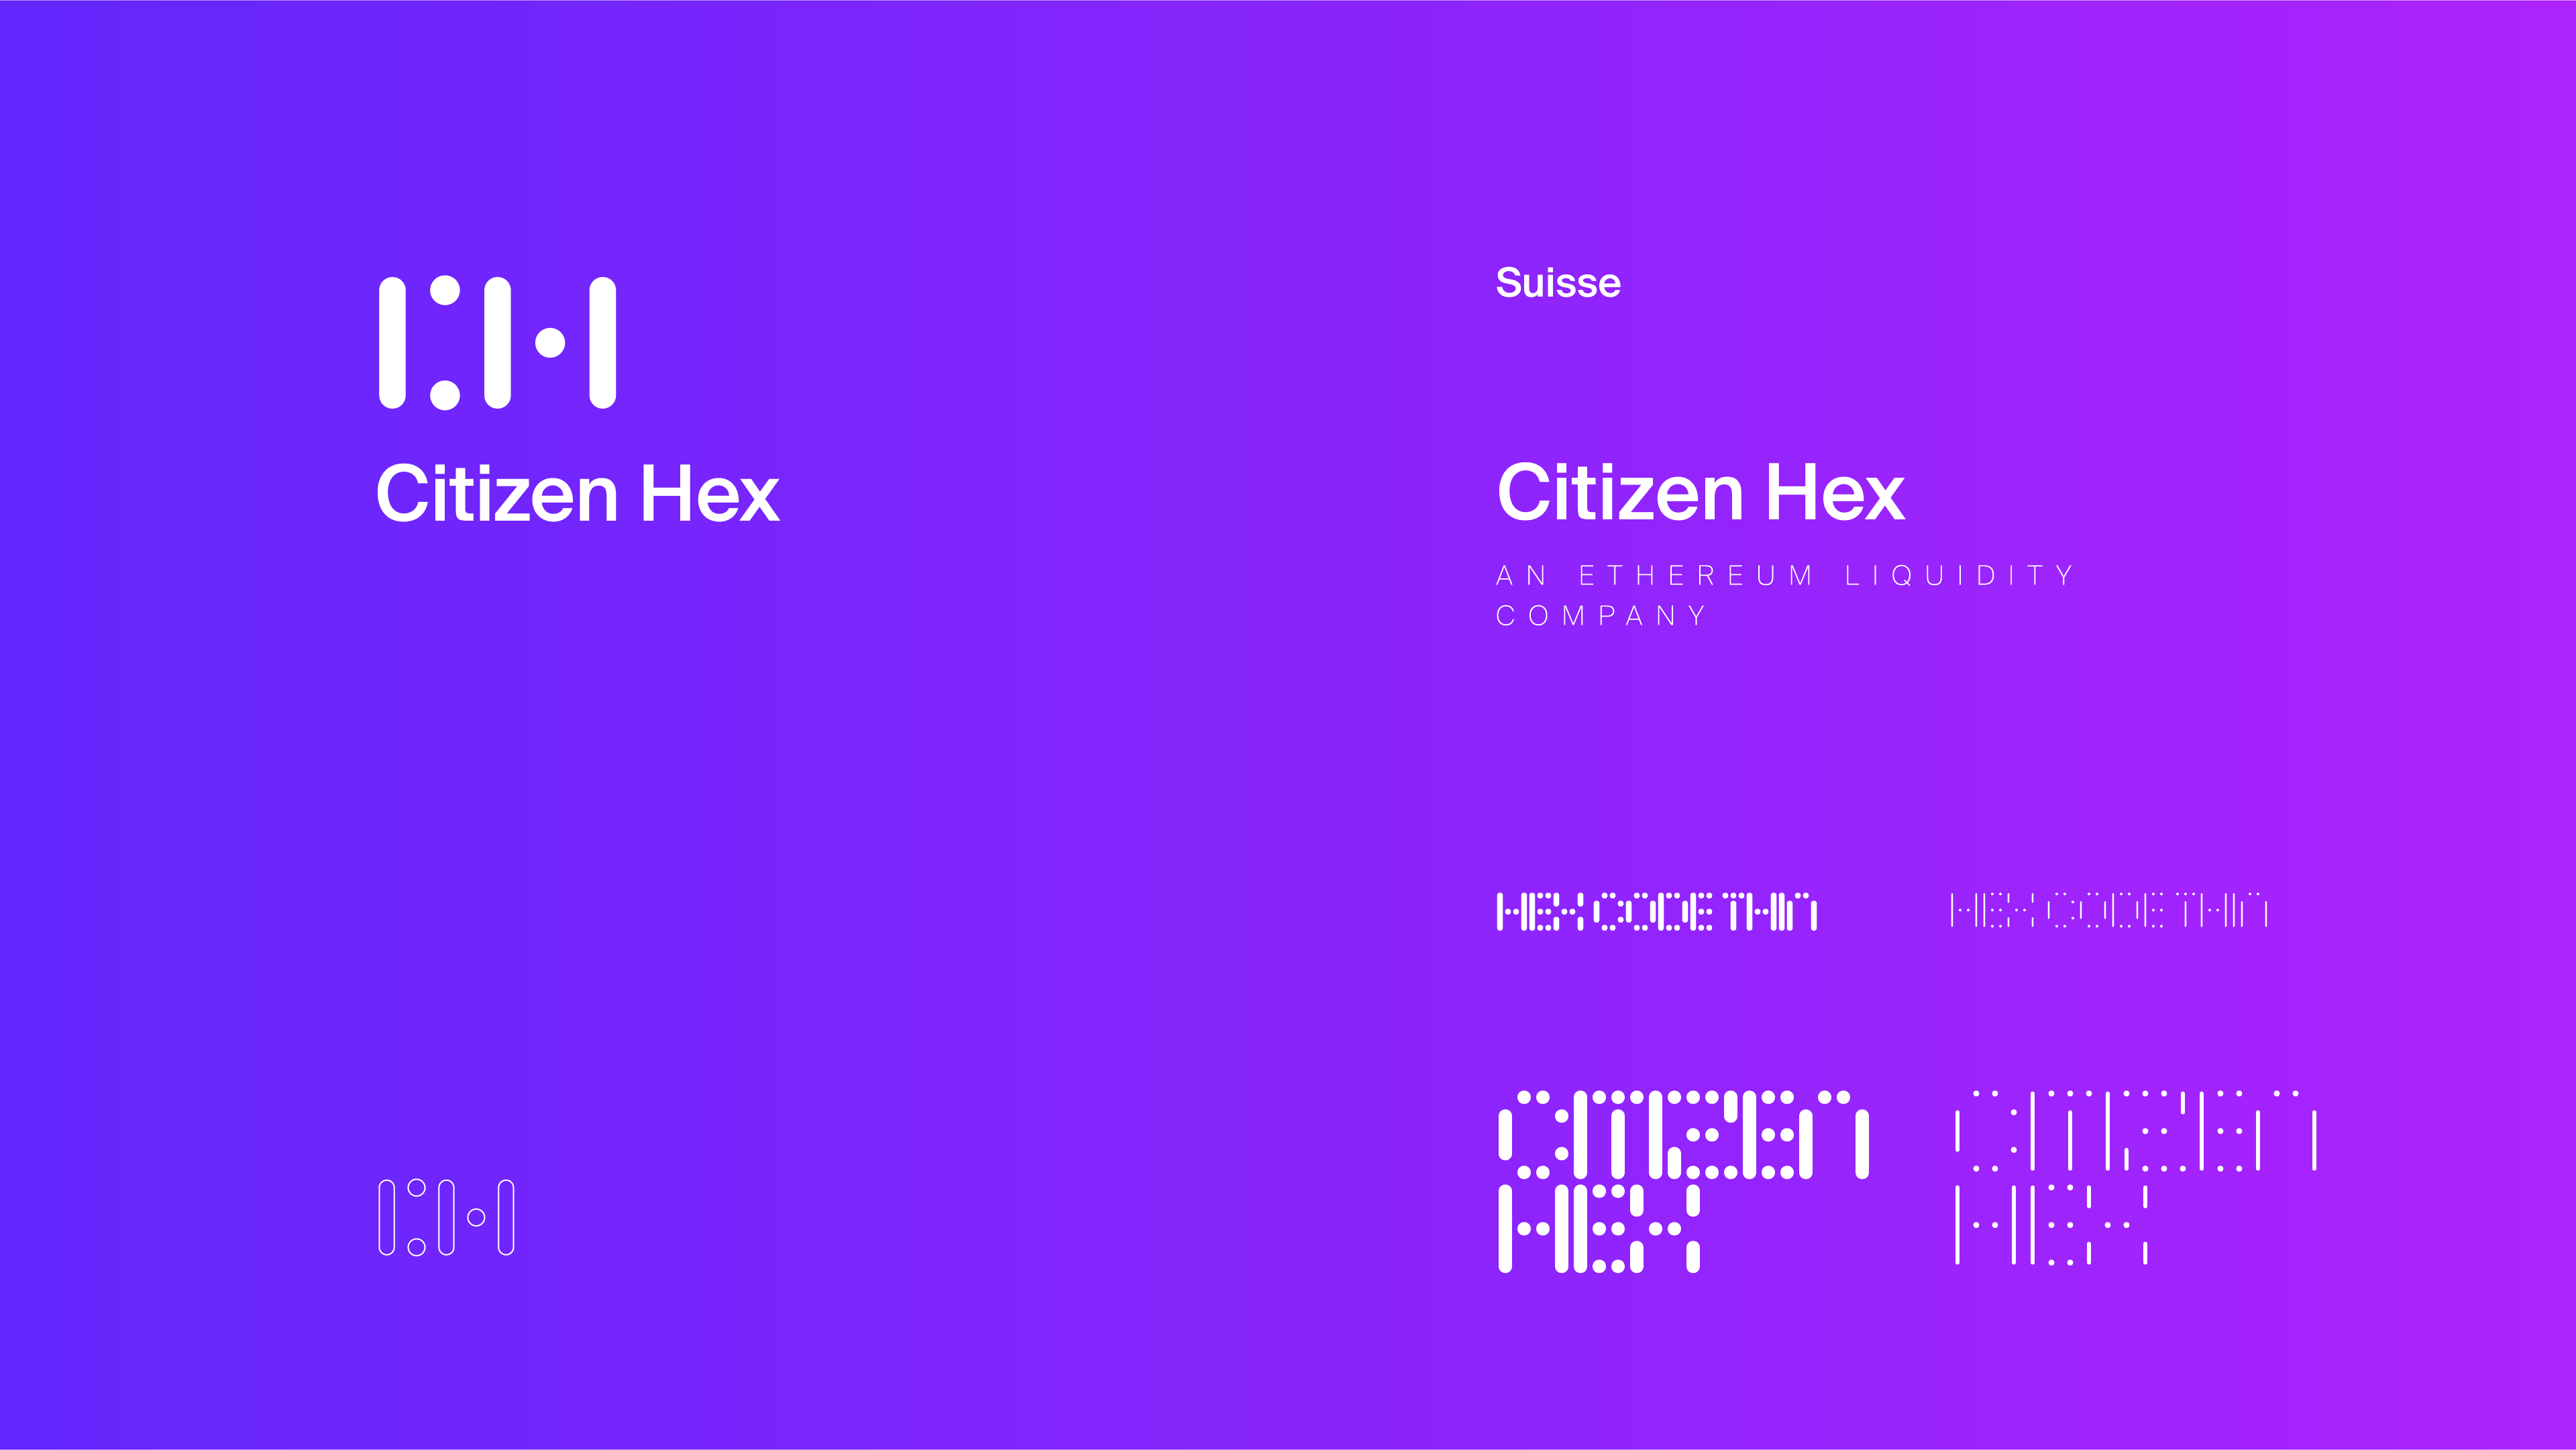 Citizen Hex - The Codeine Design